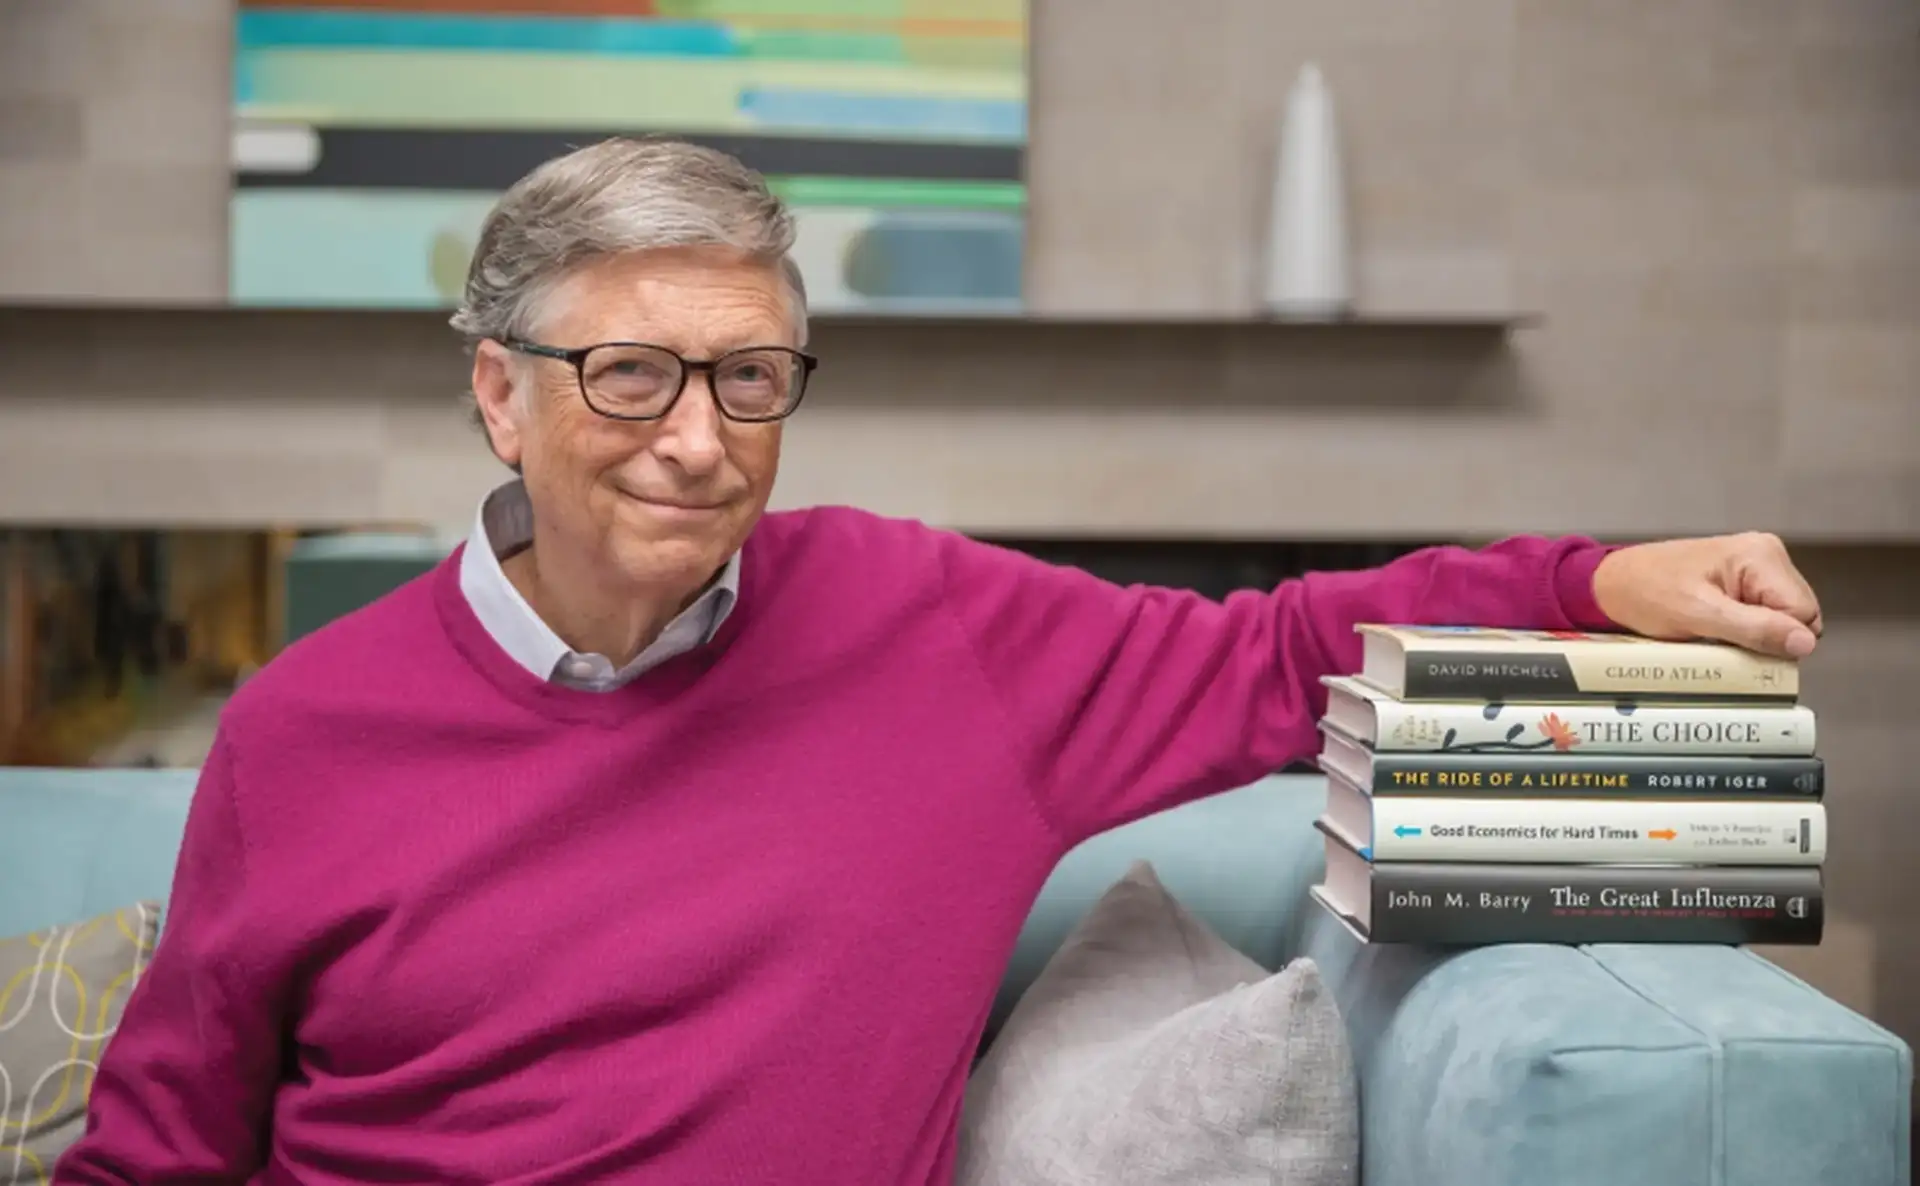 Bill Gates booste sa créativité avec des rêves en lisant des livres sur le sujet